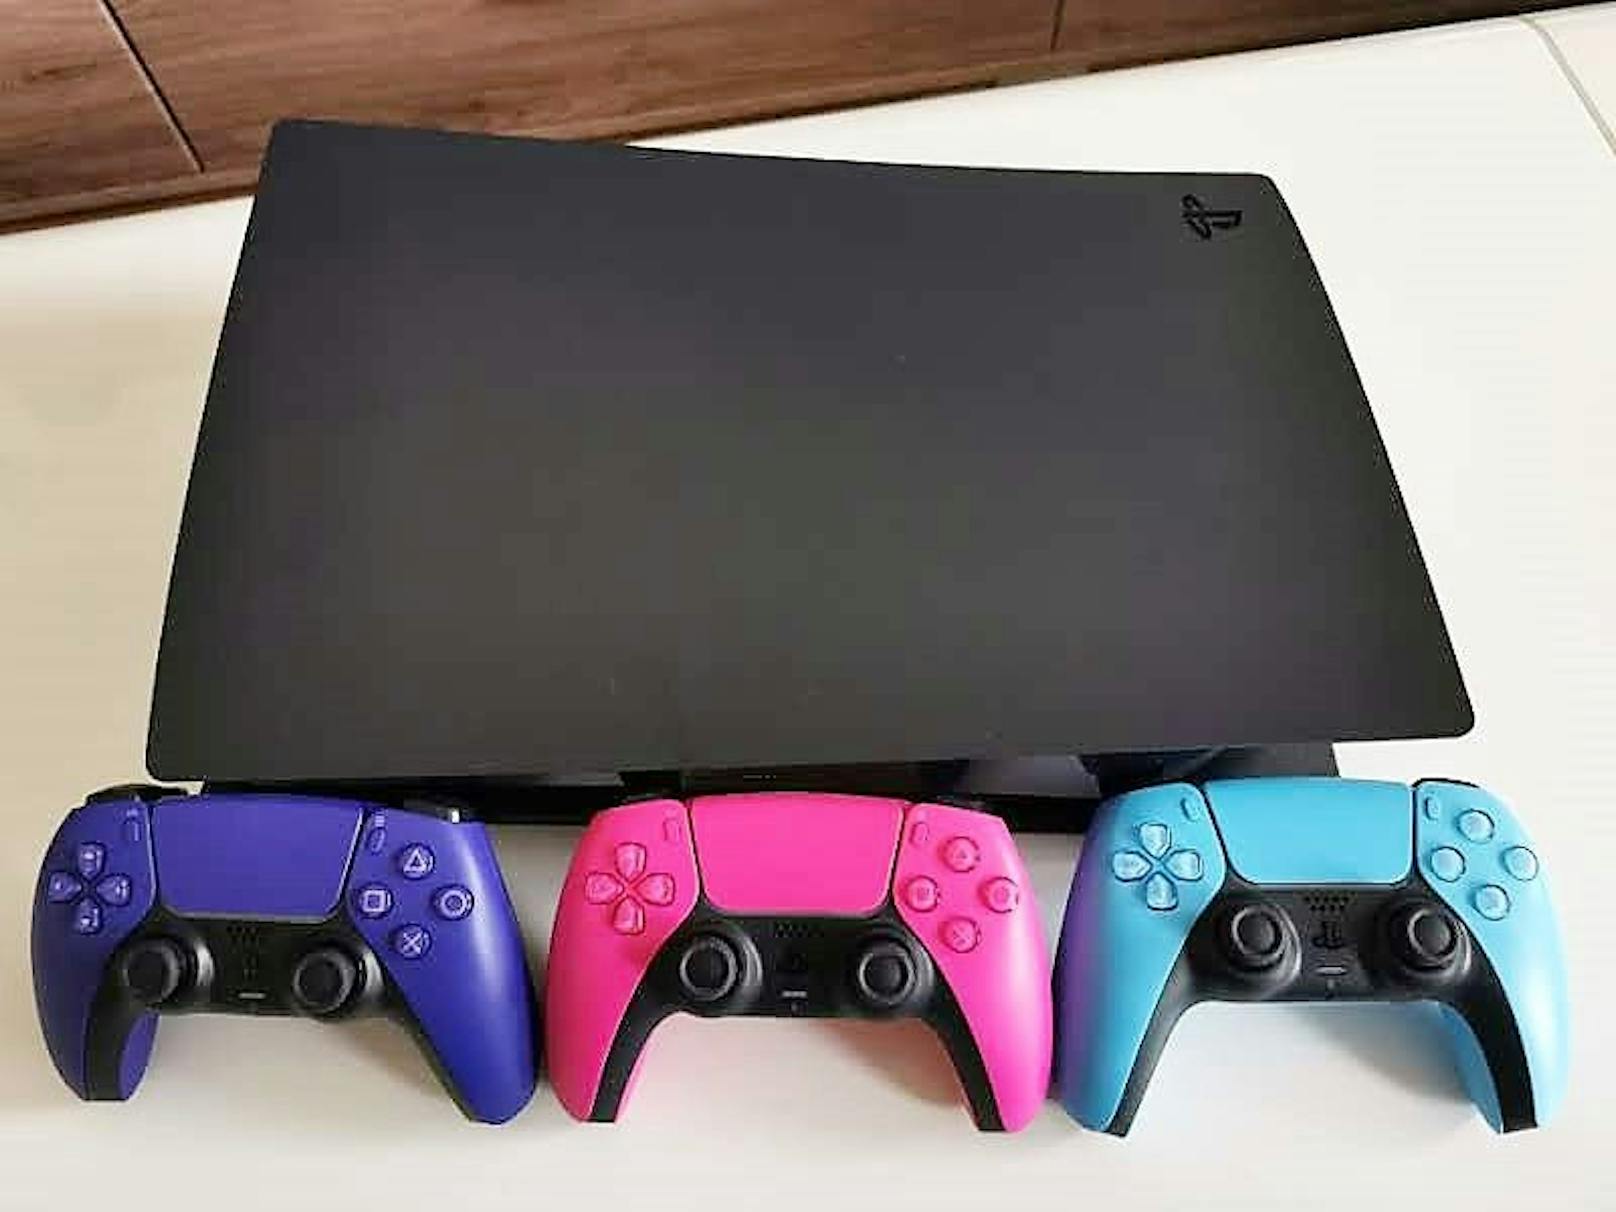 Der Eindruck der neuen PlayStation-Gadgets ist ein guter. Controller kann man sowieso immer brauchen, auch die Cover sehen schick aus und sind von guter Qualität.